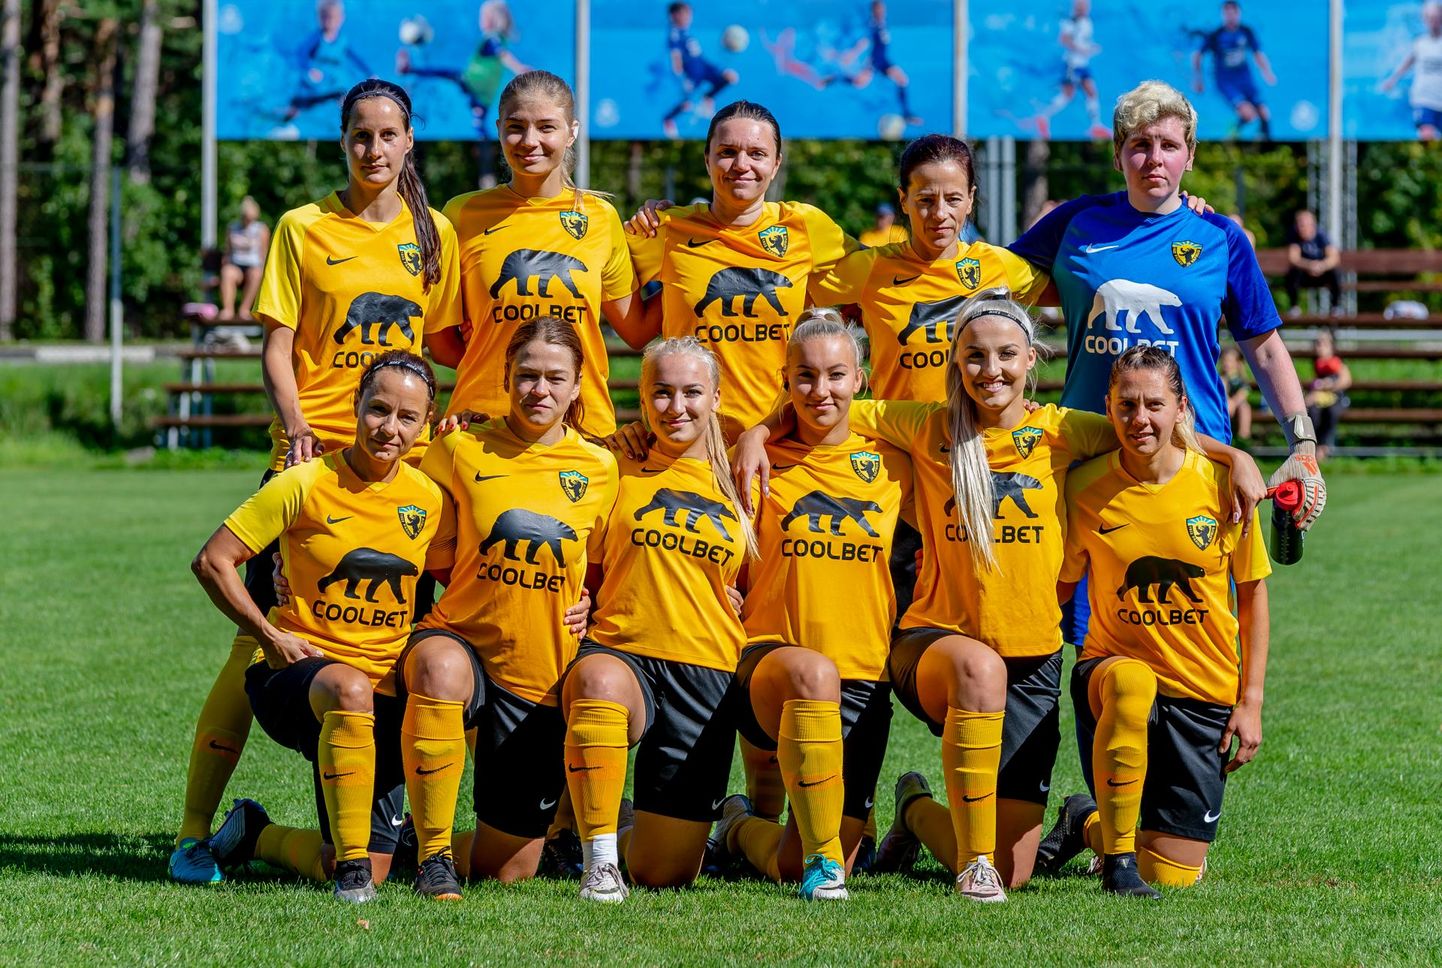 Lõppenud hooajal naiste teises liigas teise koha saavutanud Pärnu Vapruse jalgpallinaiskonnal avanes võimalus uuel hooajal lüüa kaasa kõige kõrgemal liigatasemel.